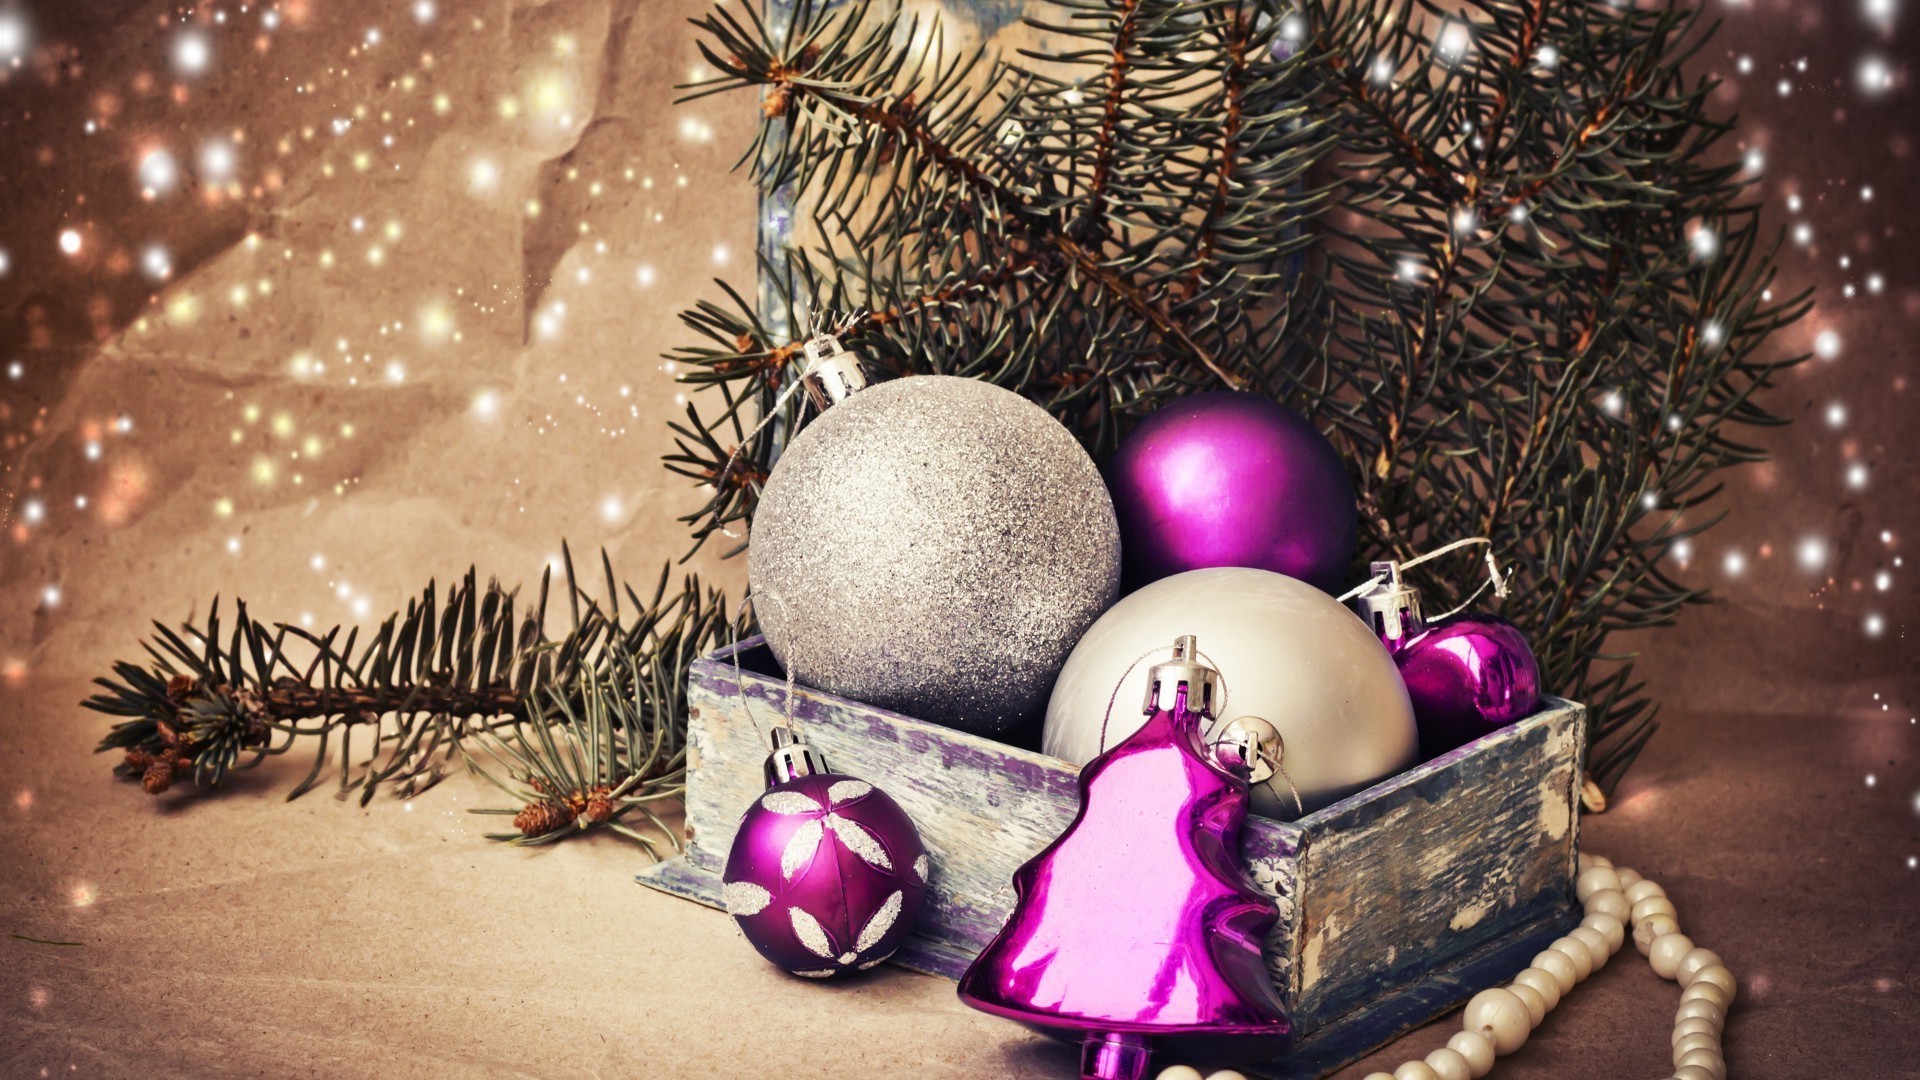 новый год рождество зима мяч праздник украшения нить блестят браслет светит сосна мерри сфера пихта лук золото дерево дизайн интерьера мишура